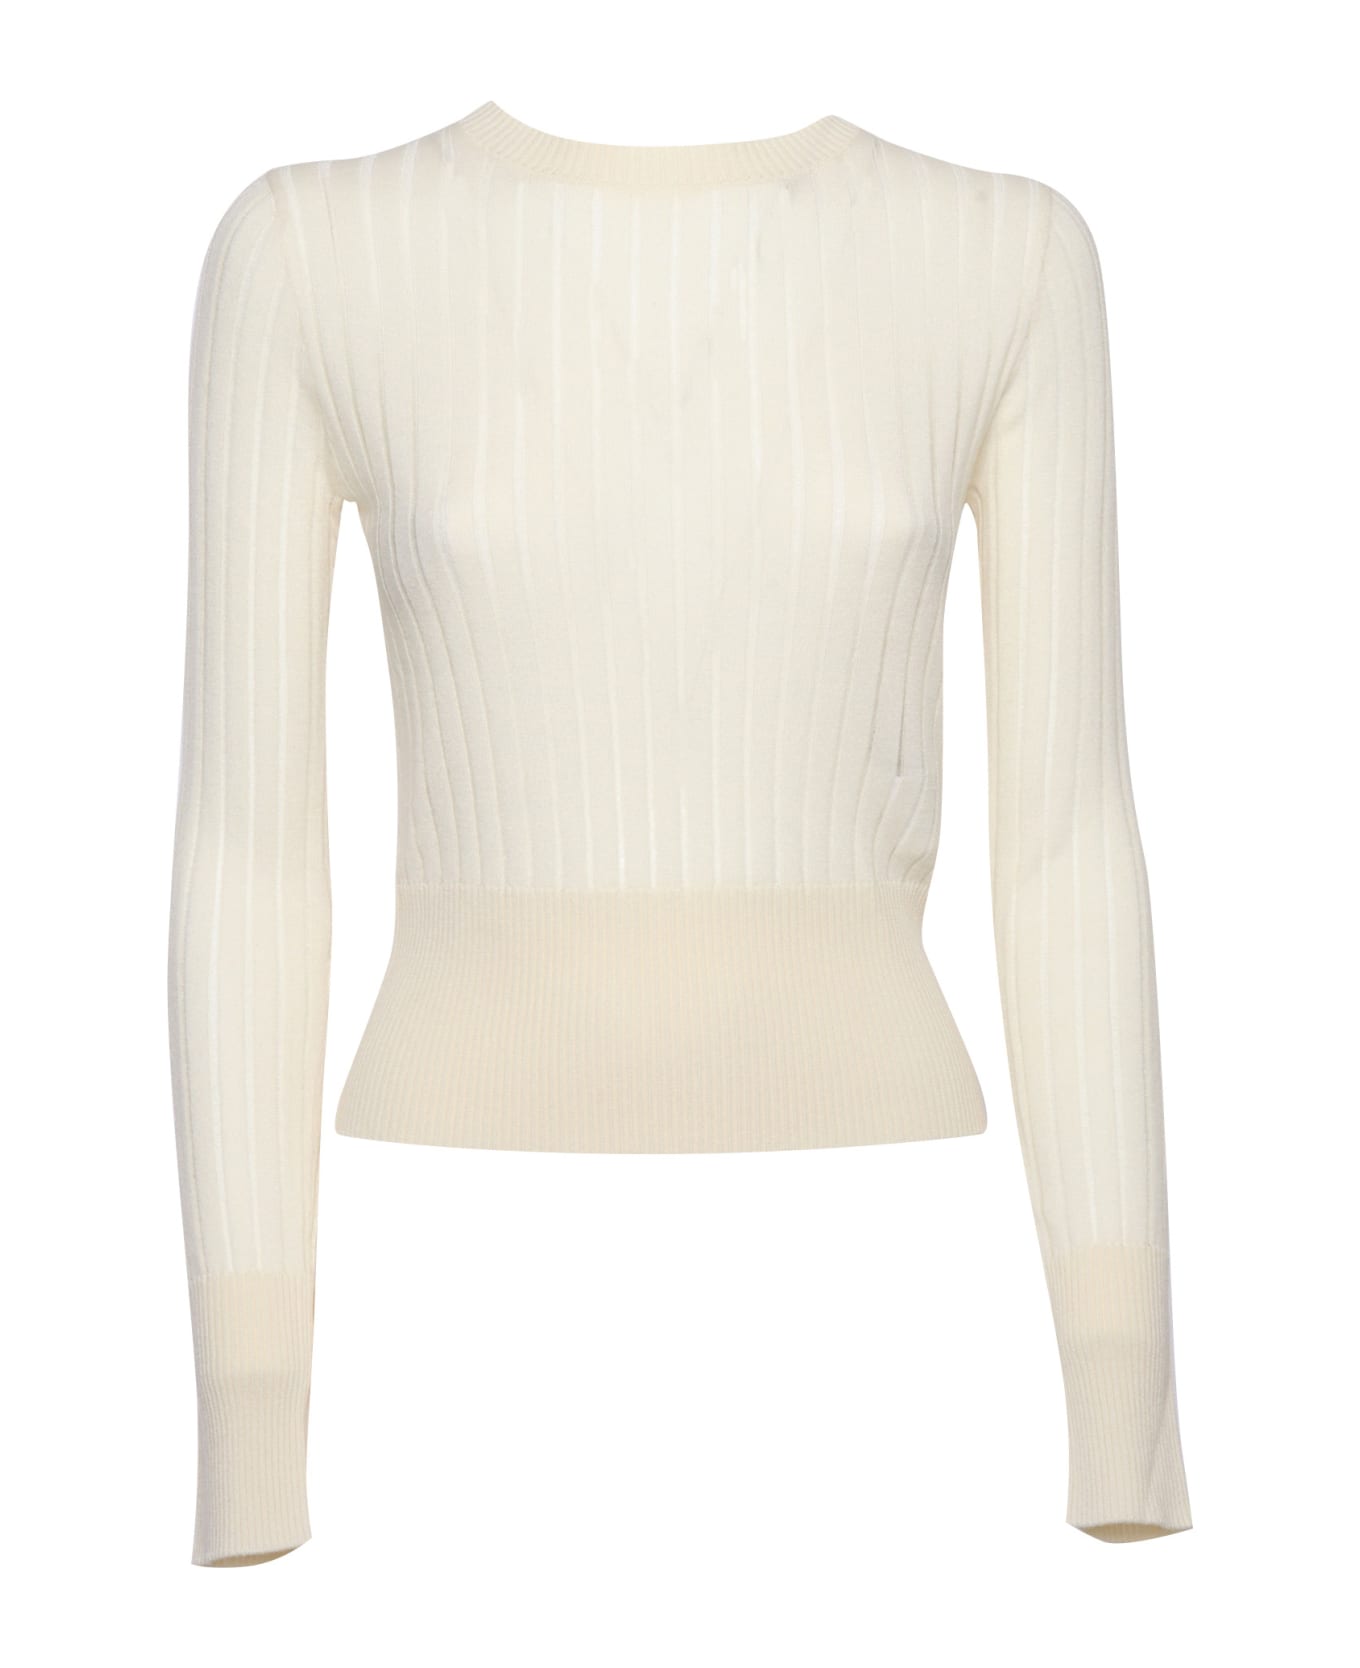 Max Mara Studio Funale Sweater - WHITE